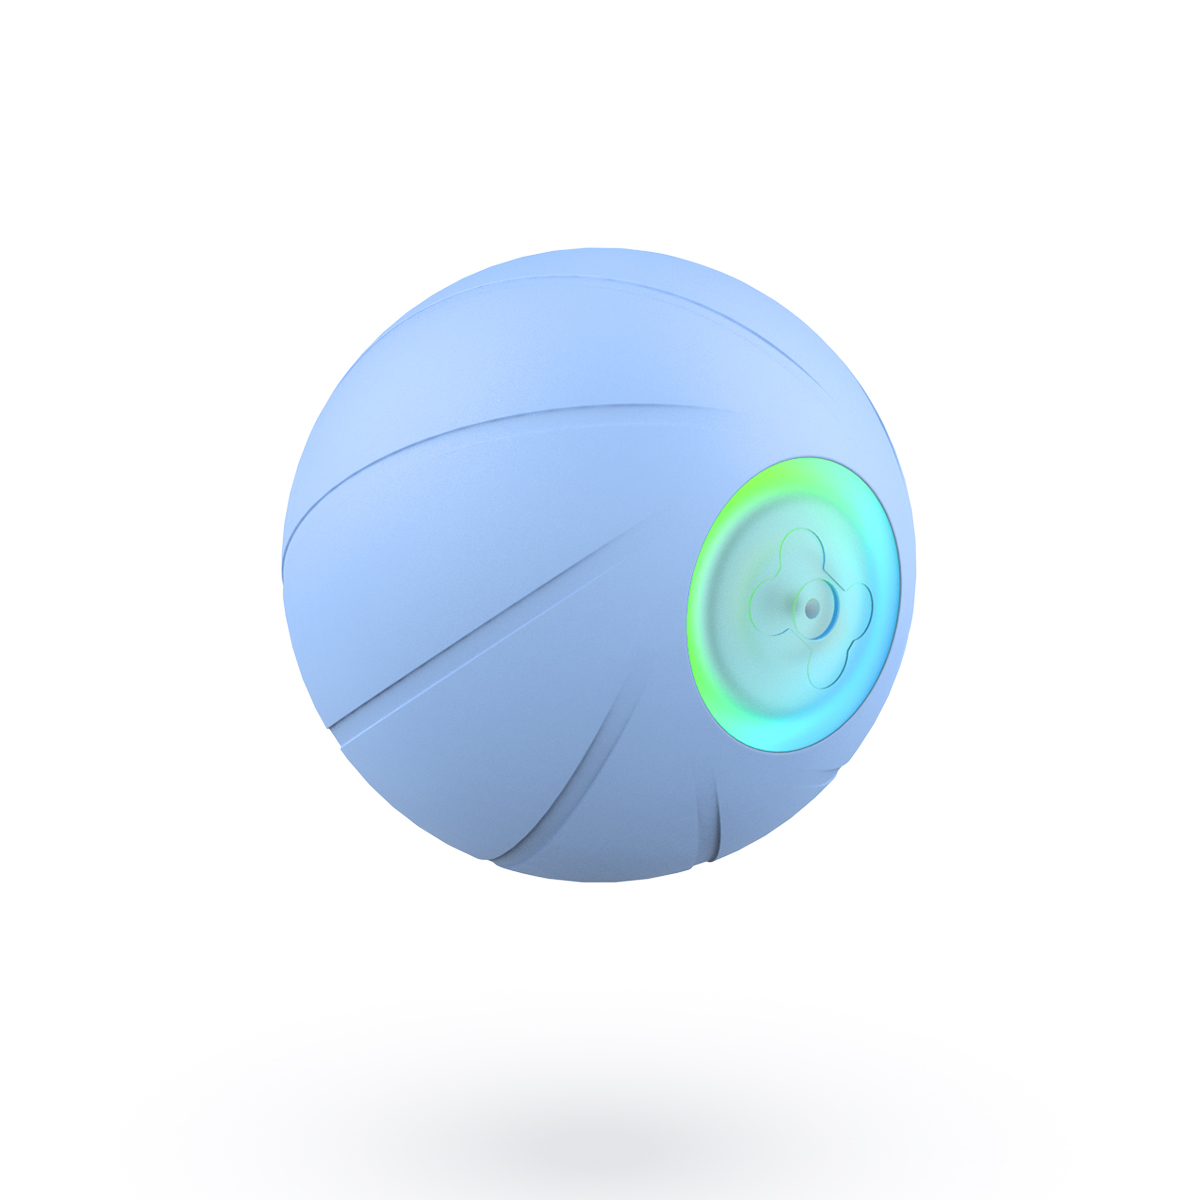 Игрушка для собак Cheerble мяч интерактивная, каучуковая, синий, 5.6 см